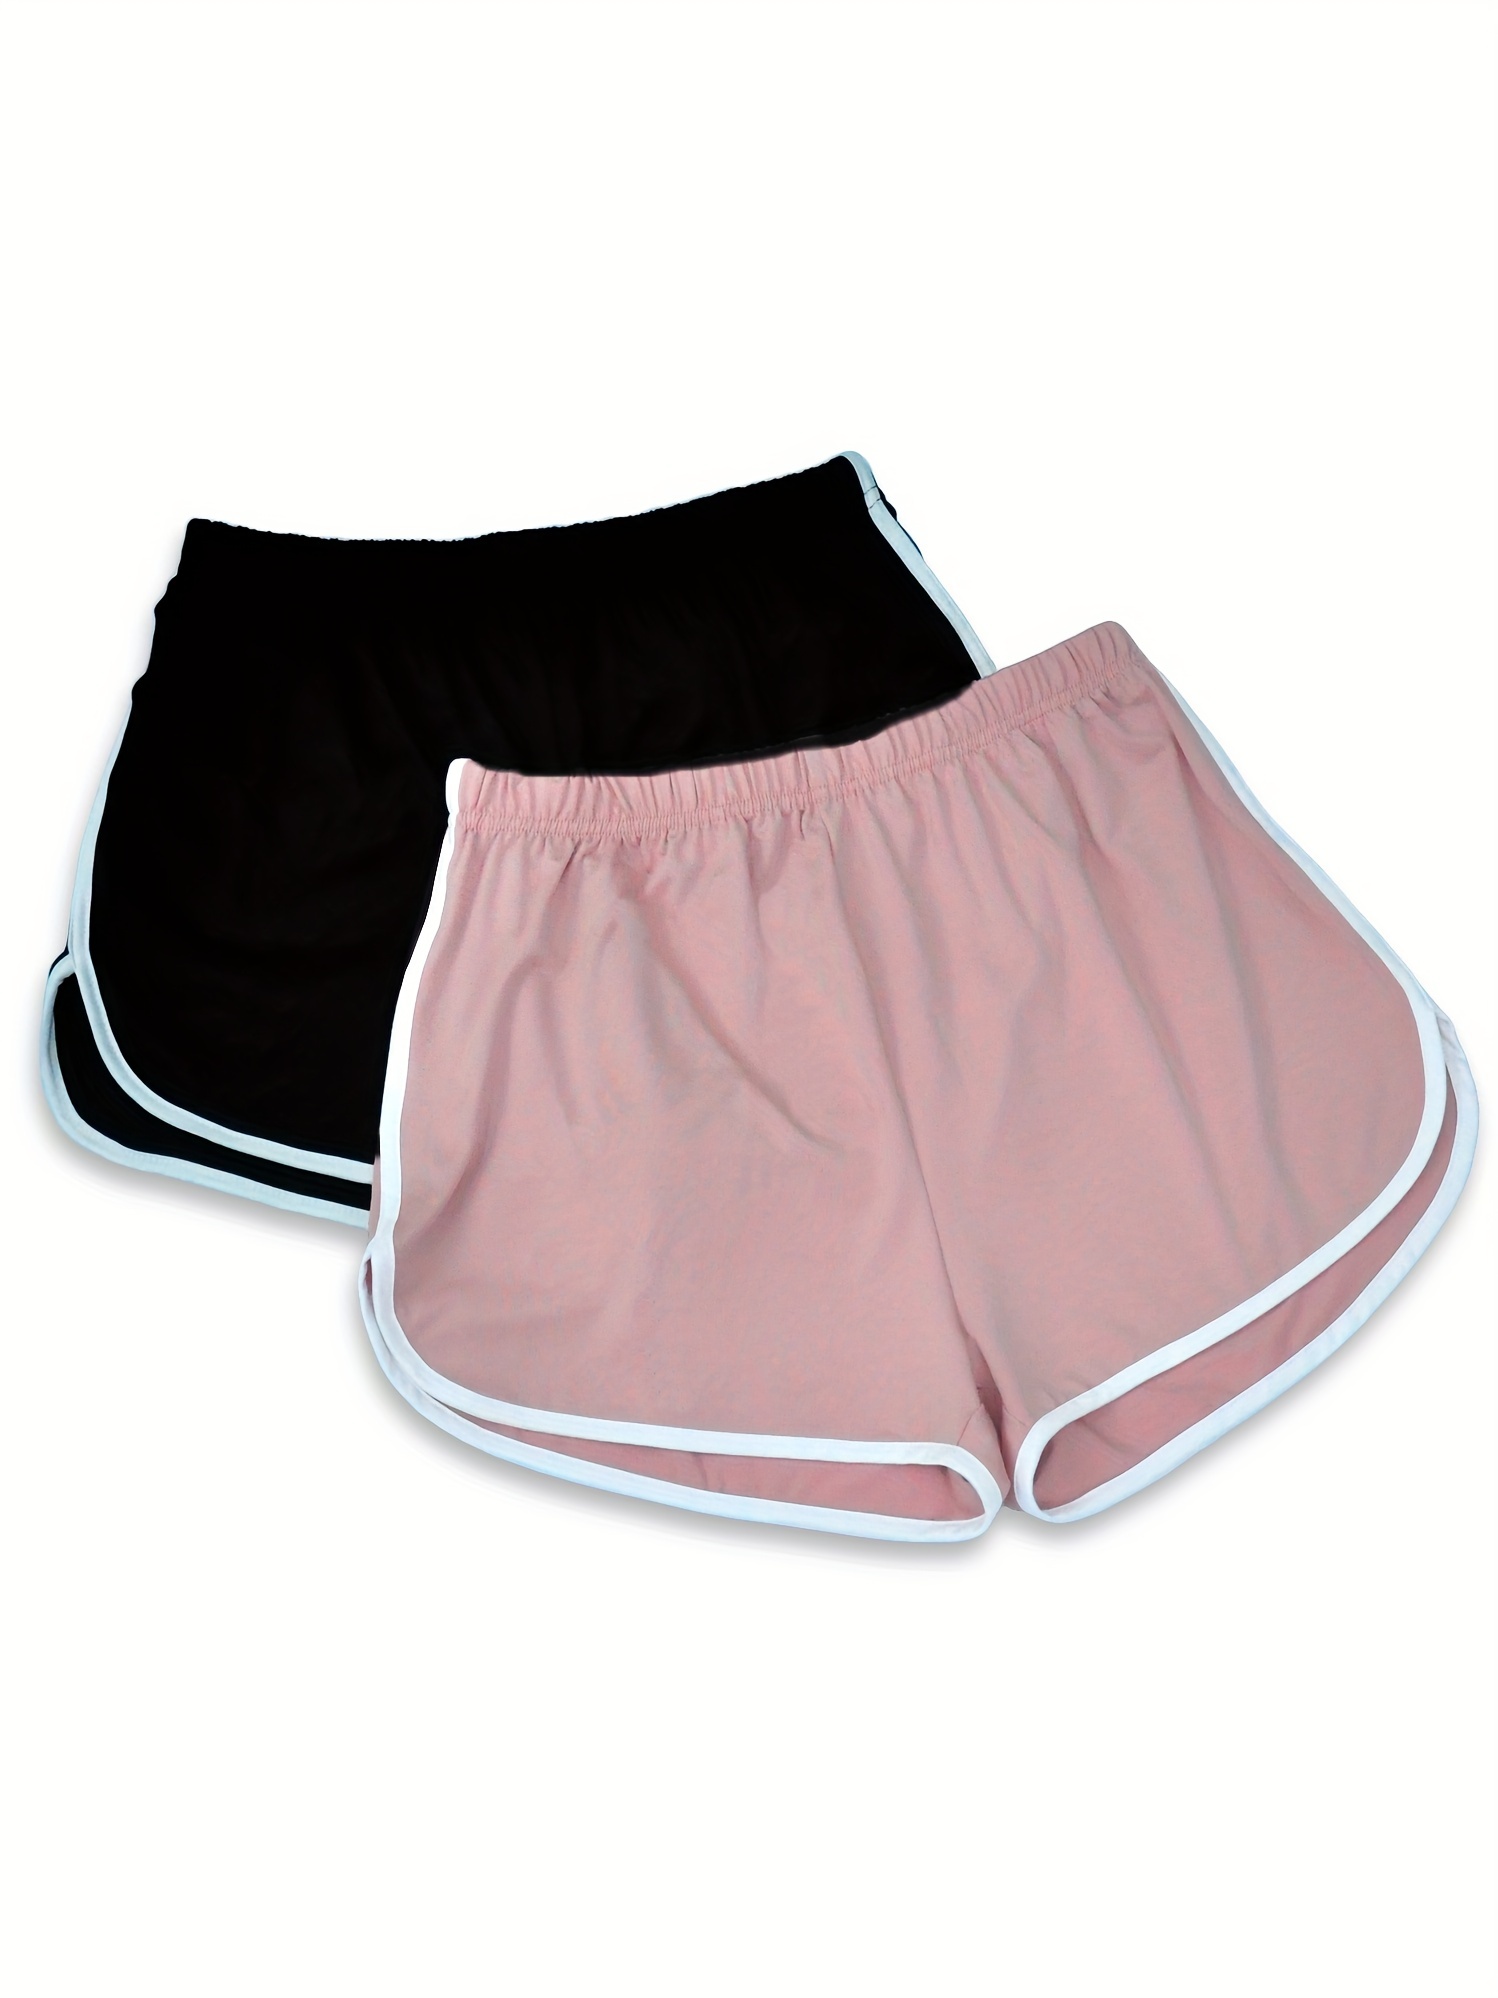 Plus Size Basic Pajama Shorts Set Women's Plus Elastic Waist